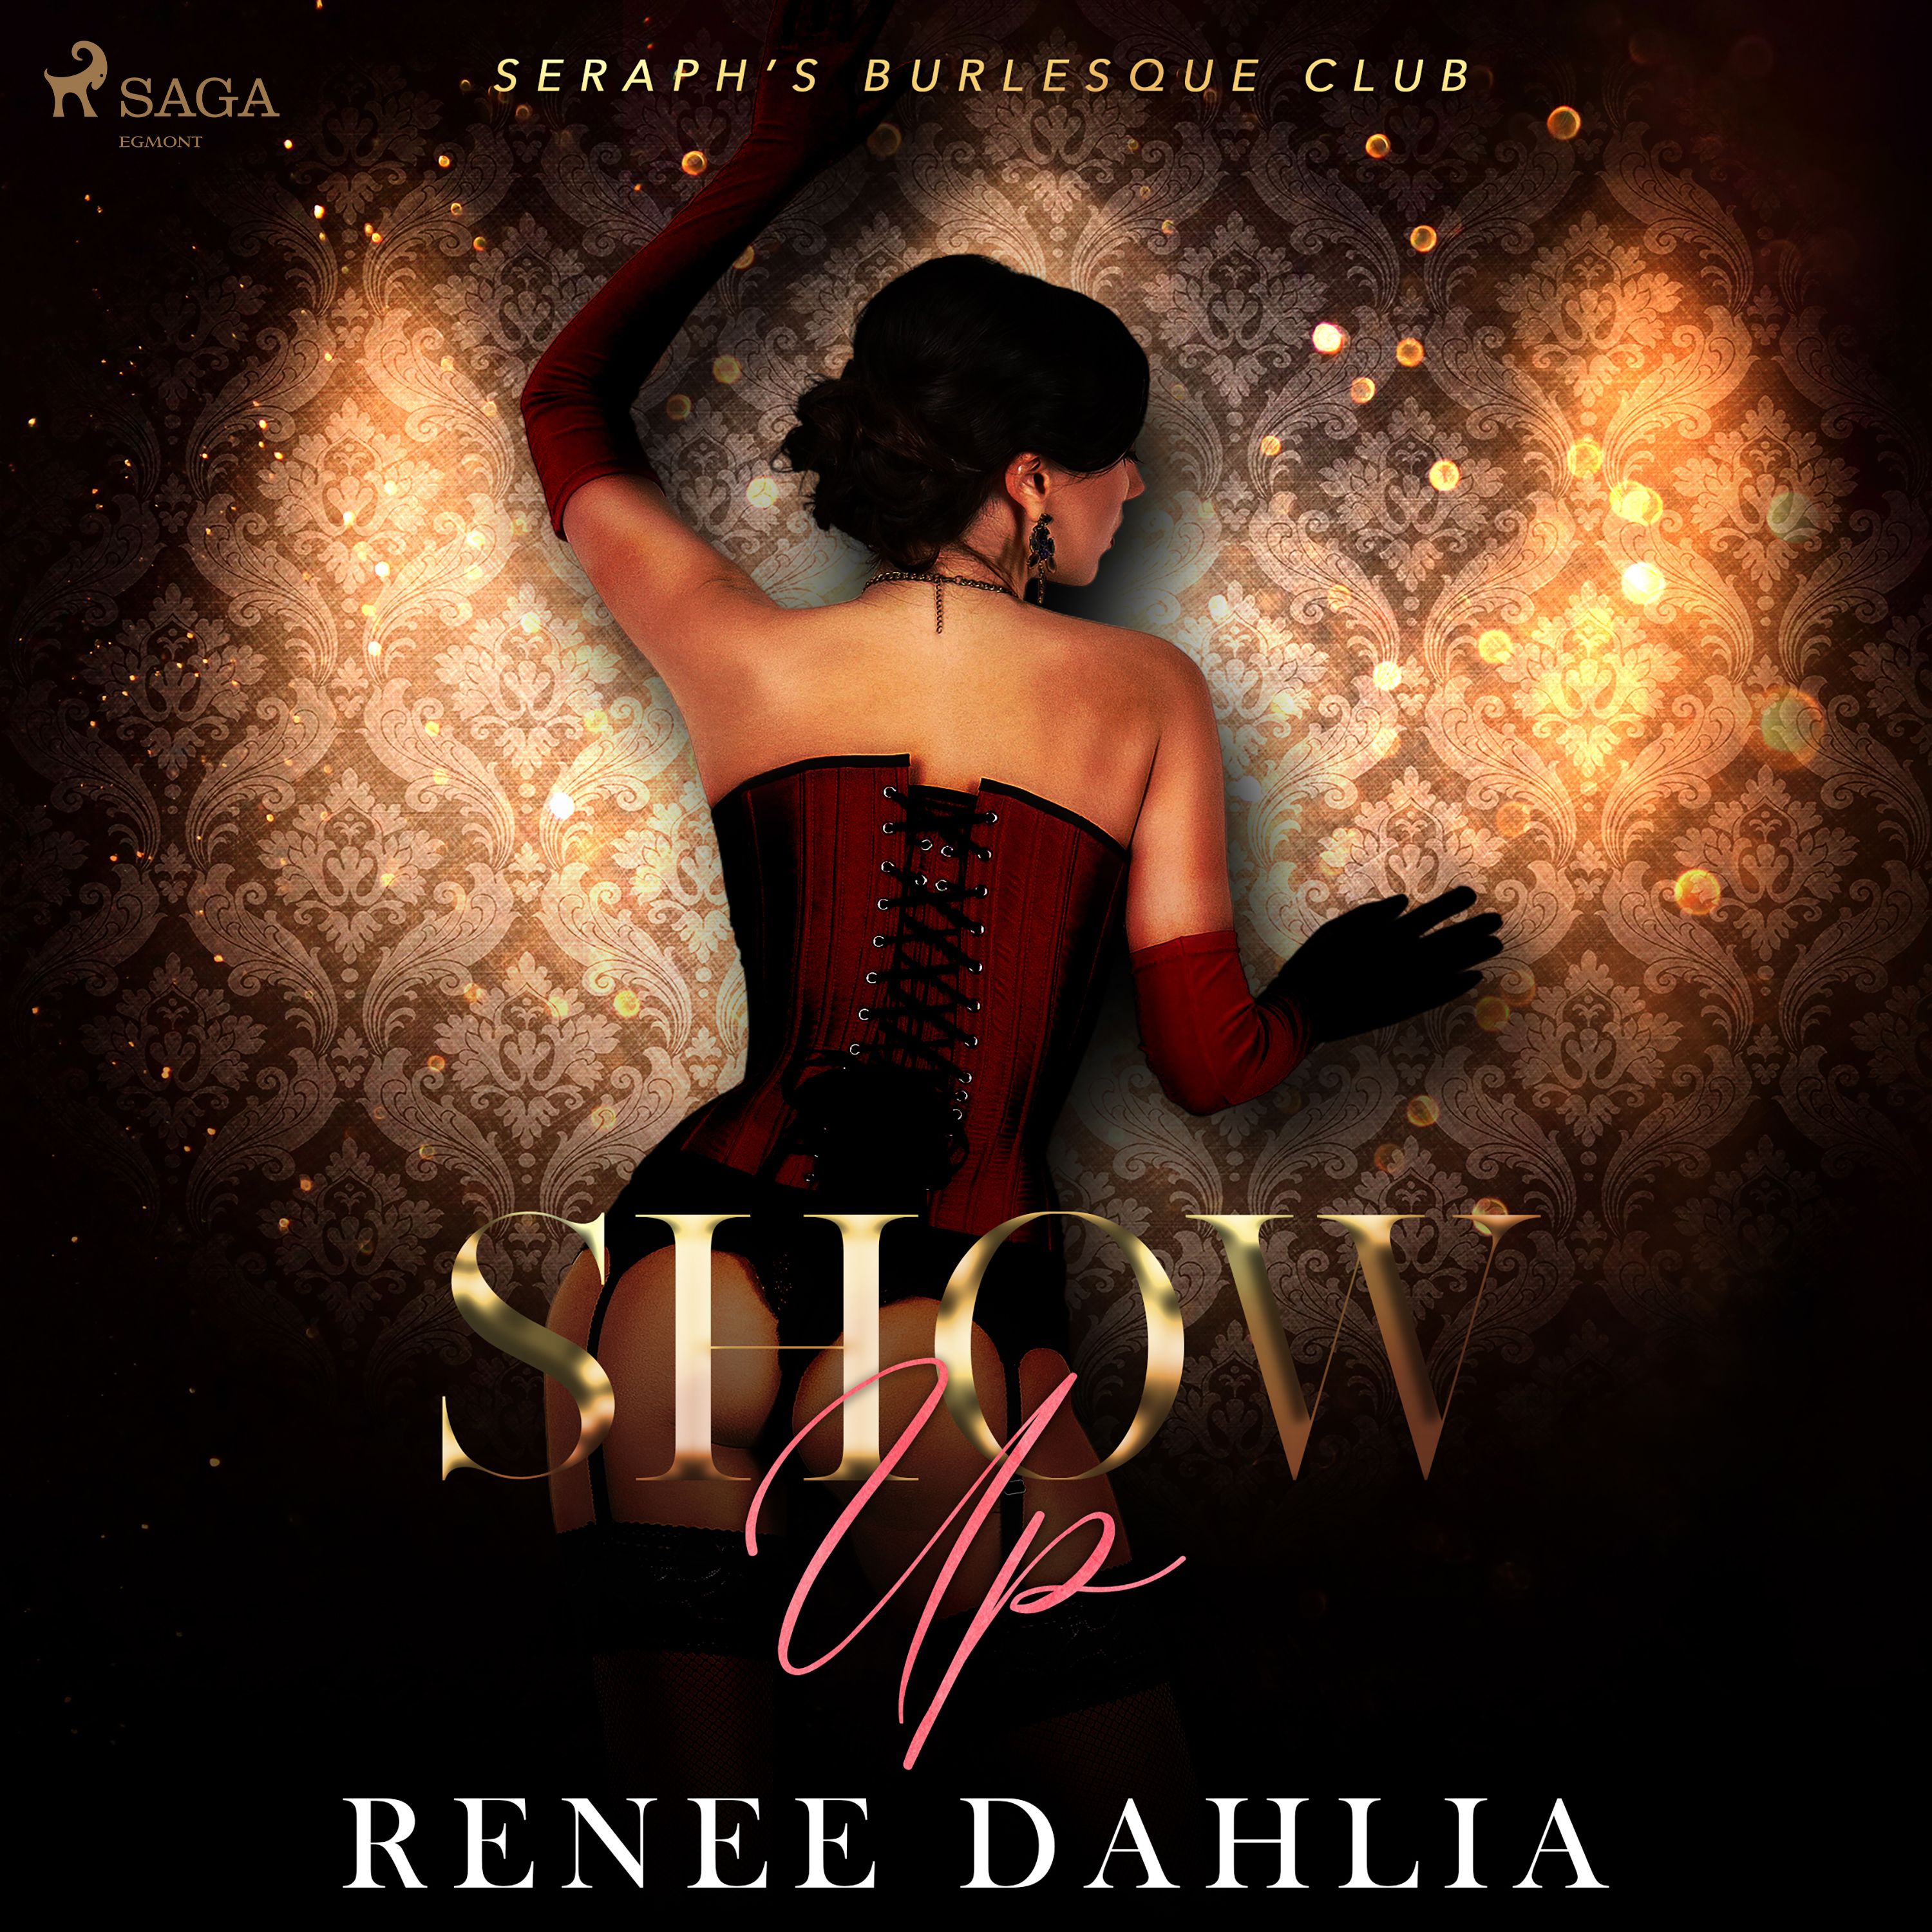 Show Up, lydbog af Renee Dahlia